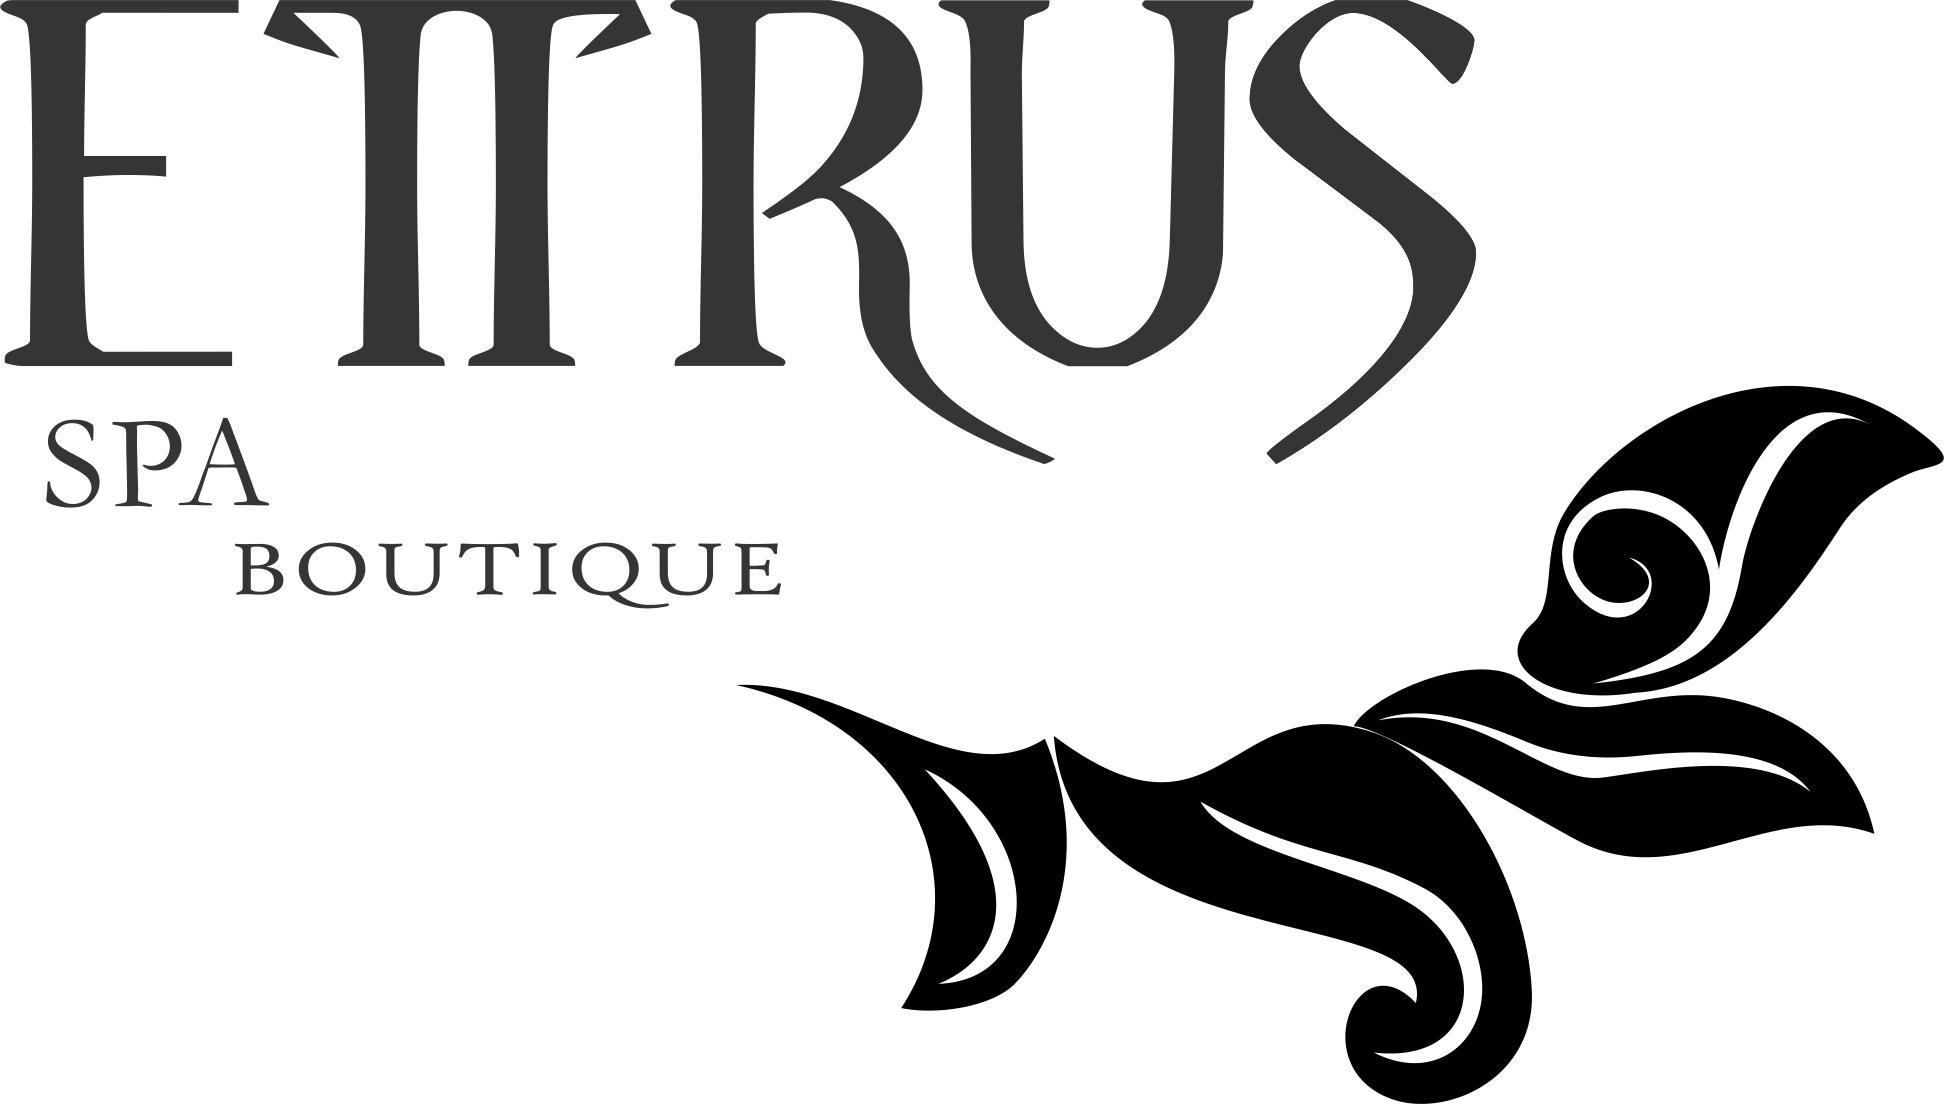 Ettrus Spa Boutique